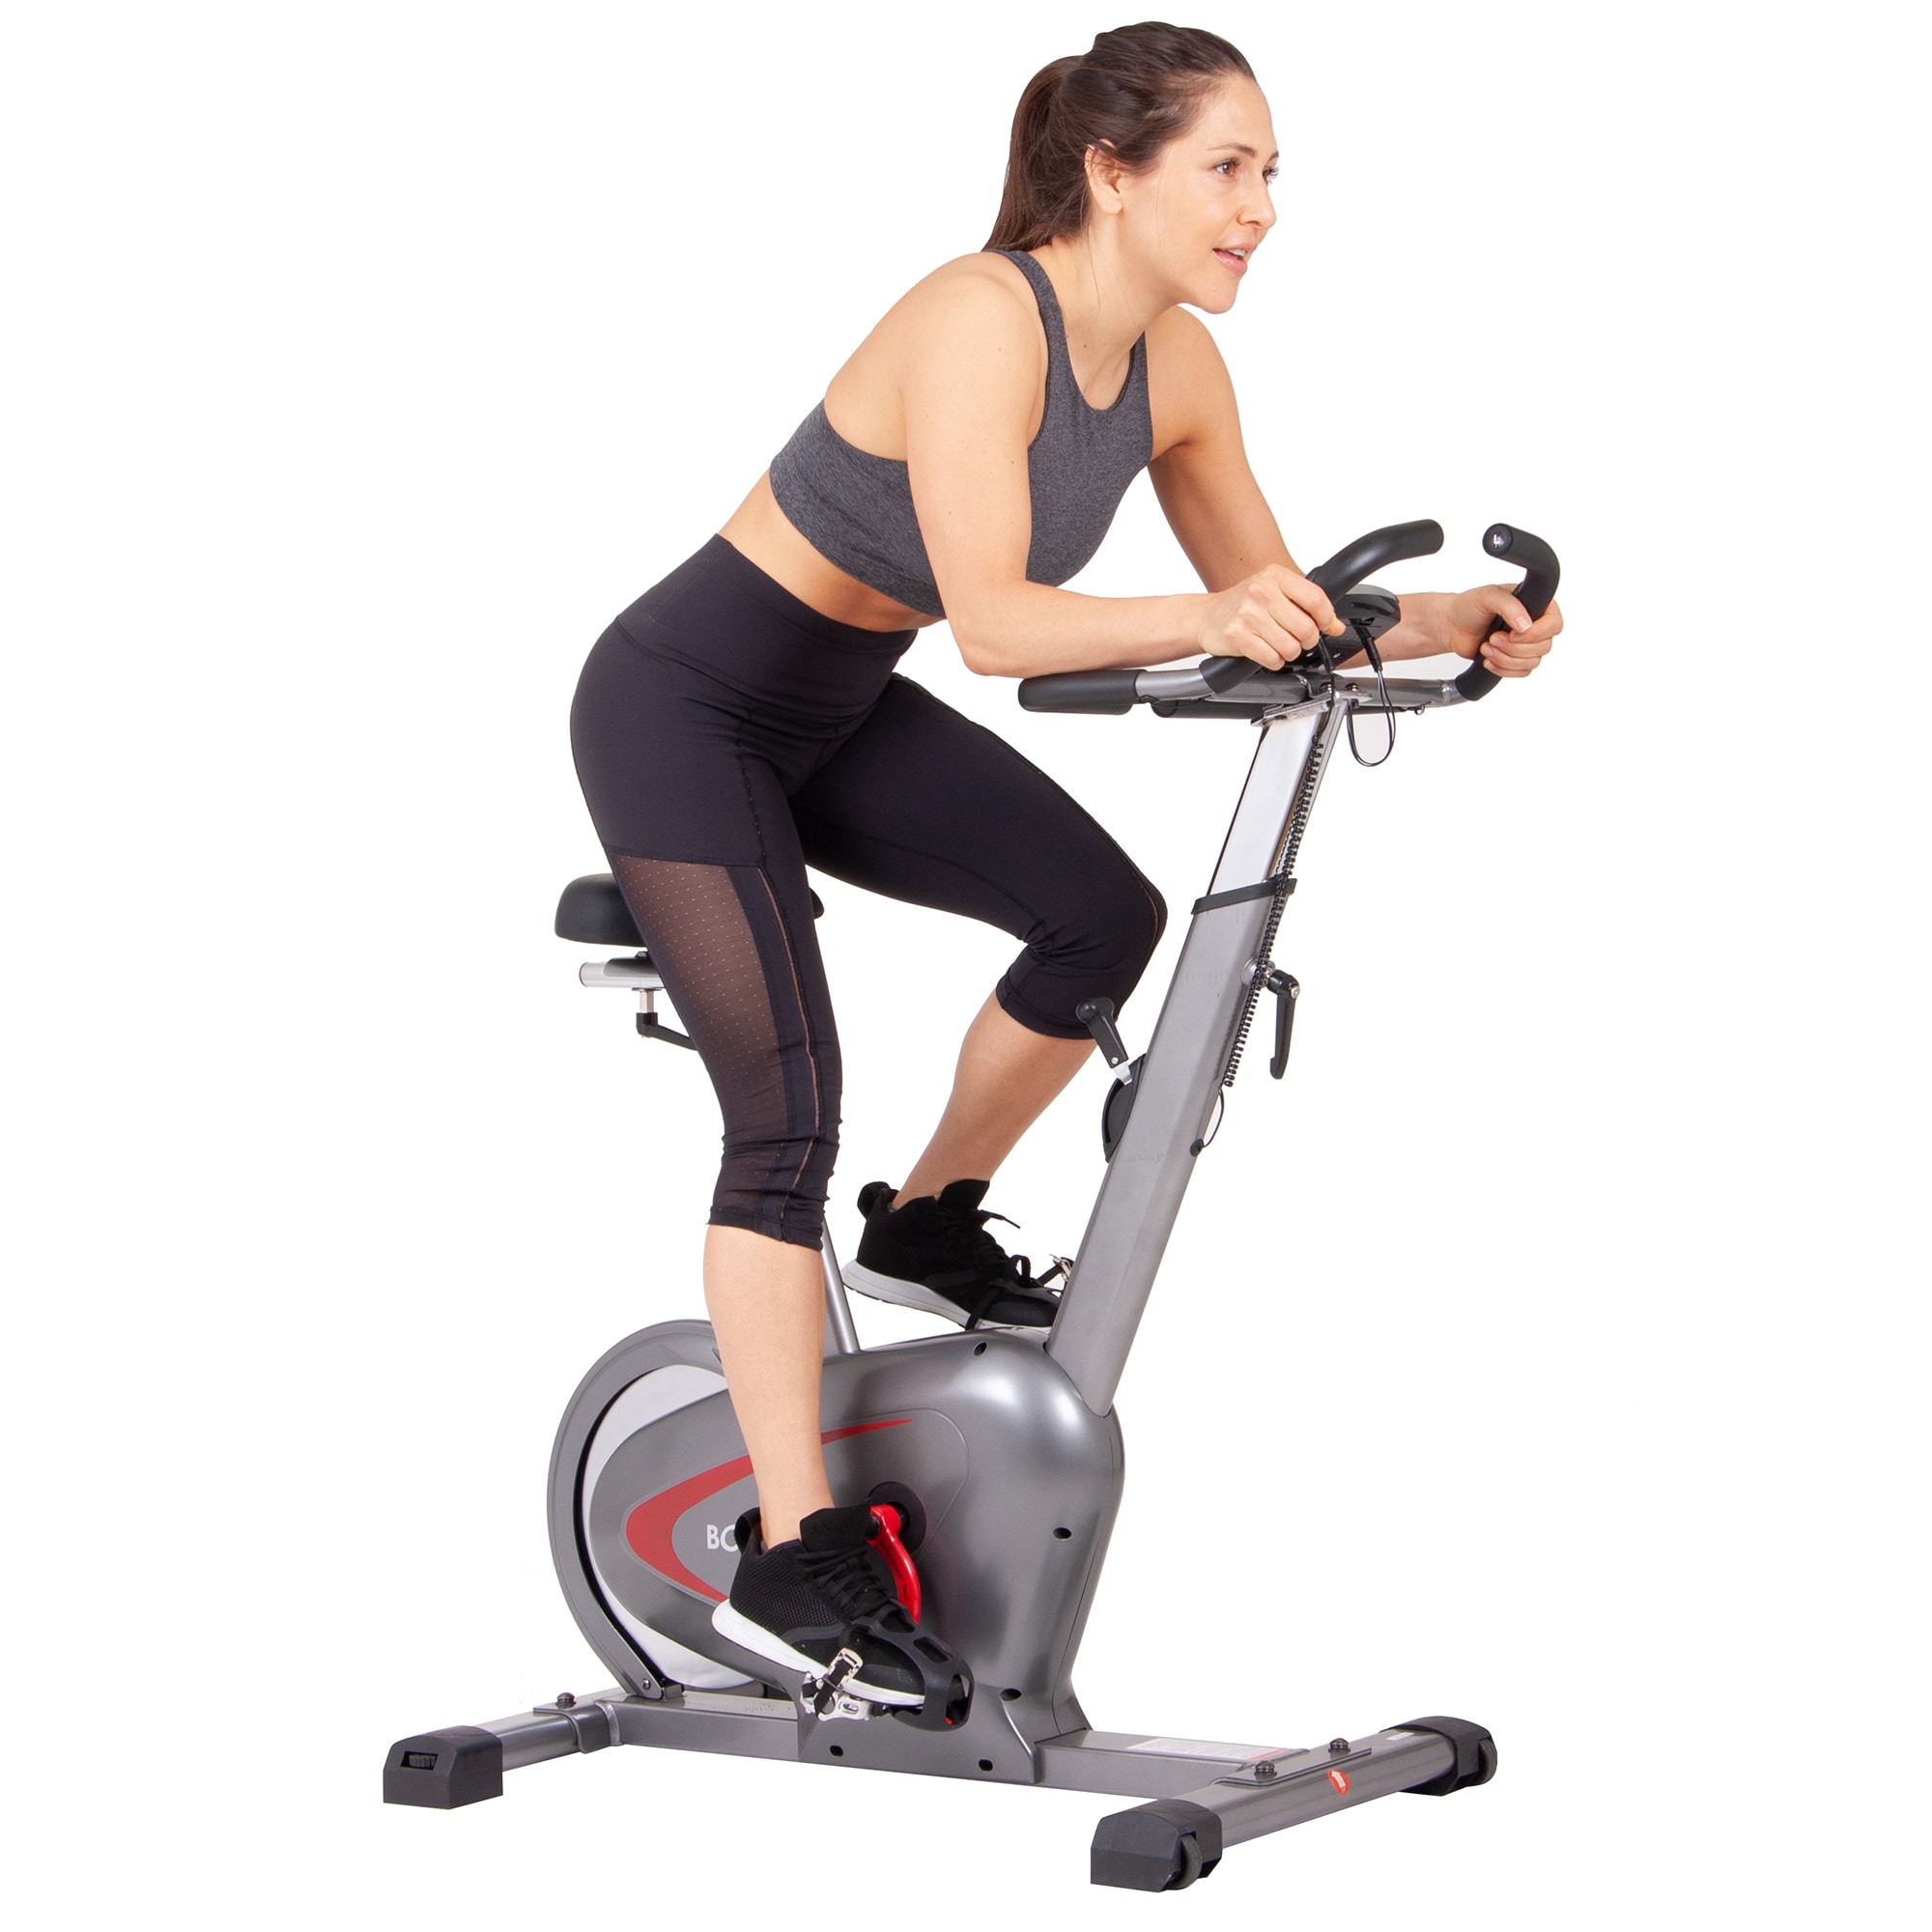 Body Flex Sports Exercise Bikes at